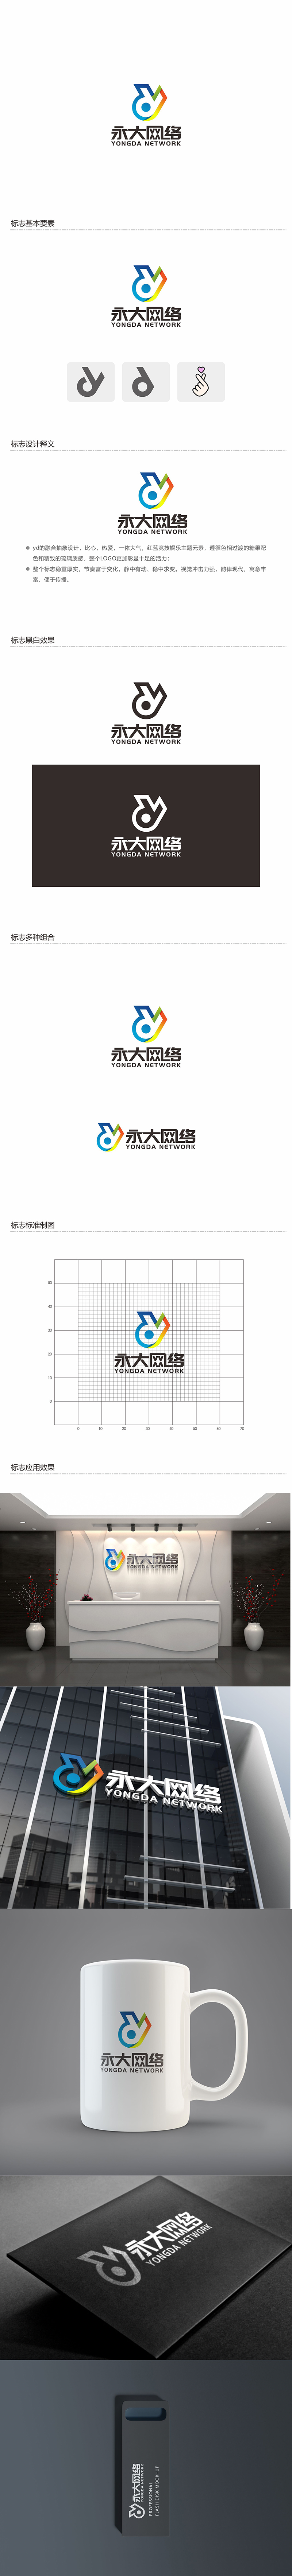 郑锦尚的永大网络logo设计